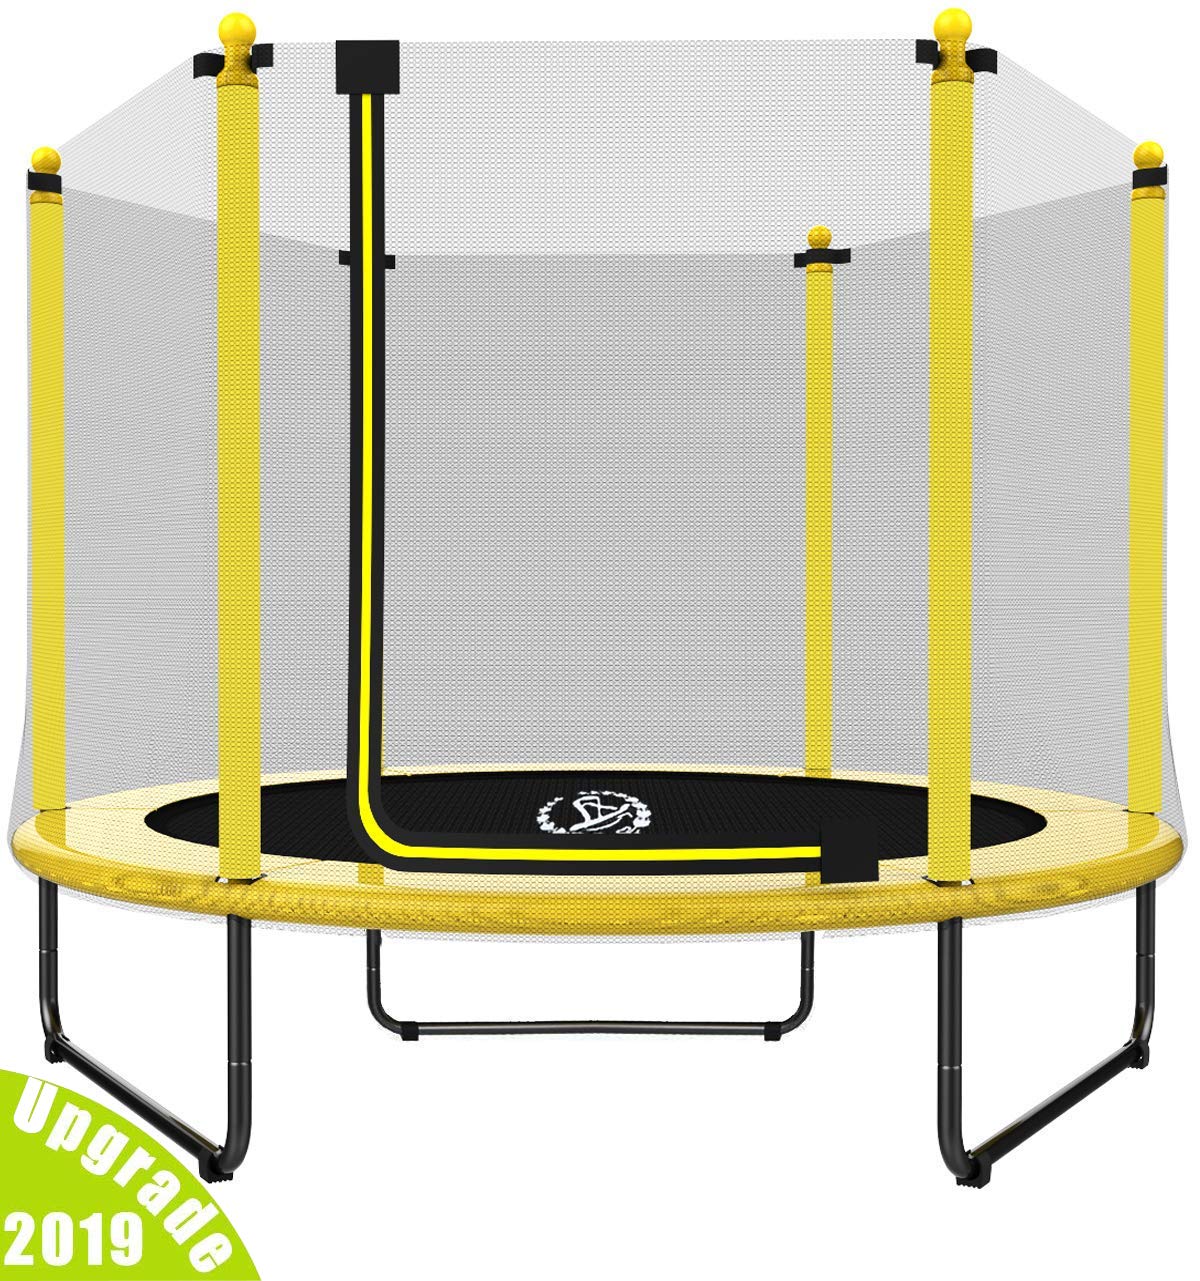 LANGXUN 60" Trampoline for Kids - 5ft Outdoor & Indoor Trampoline